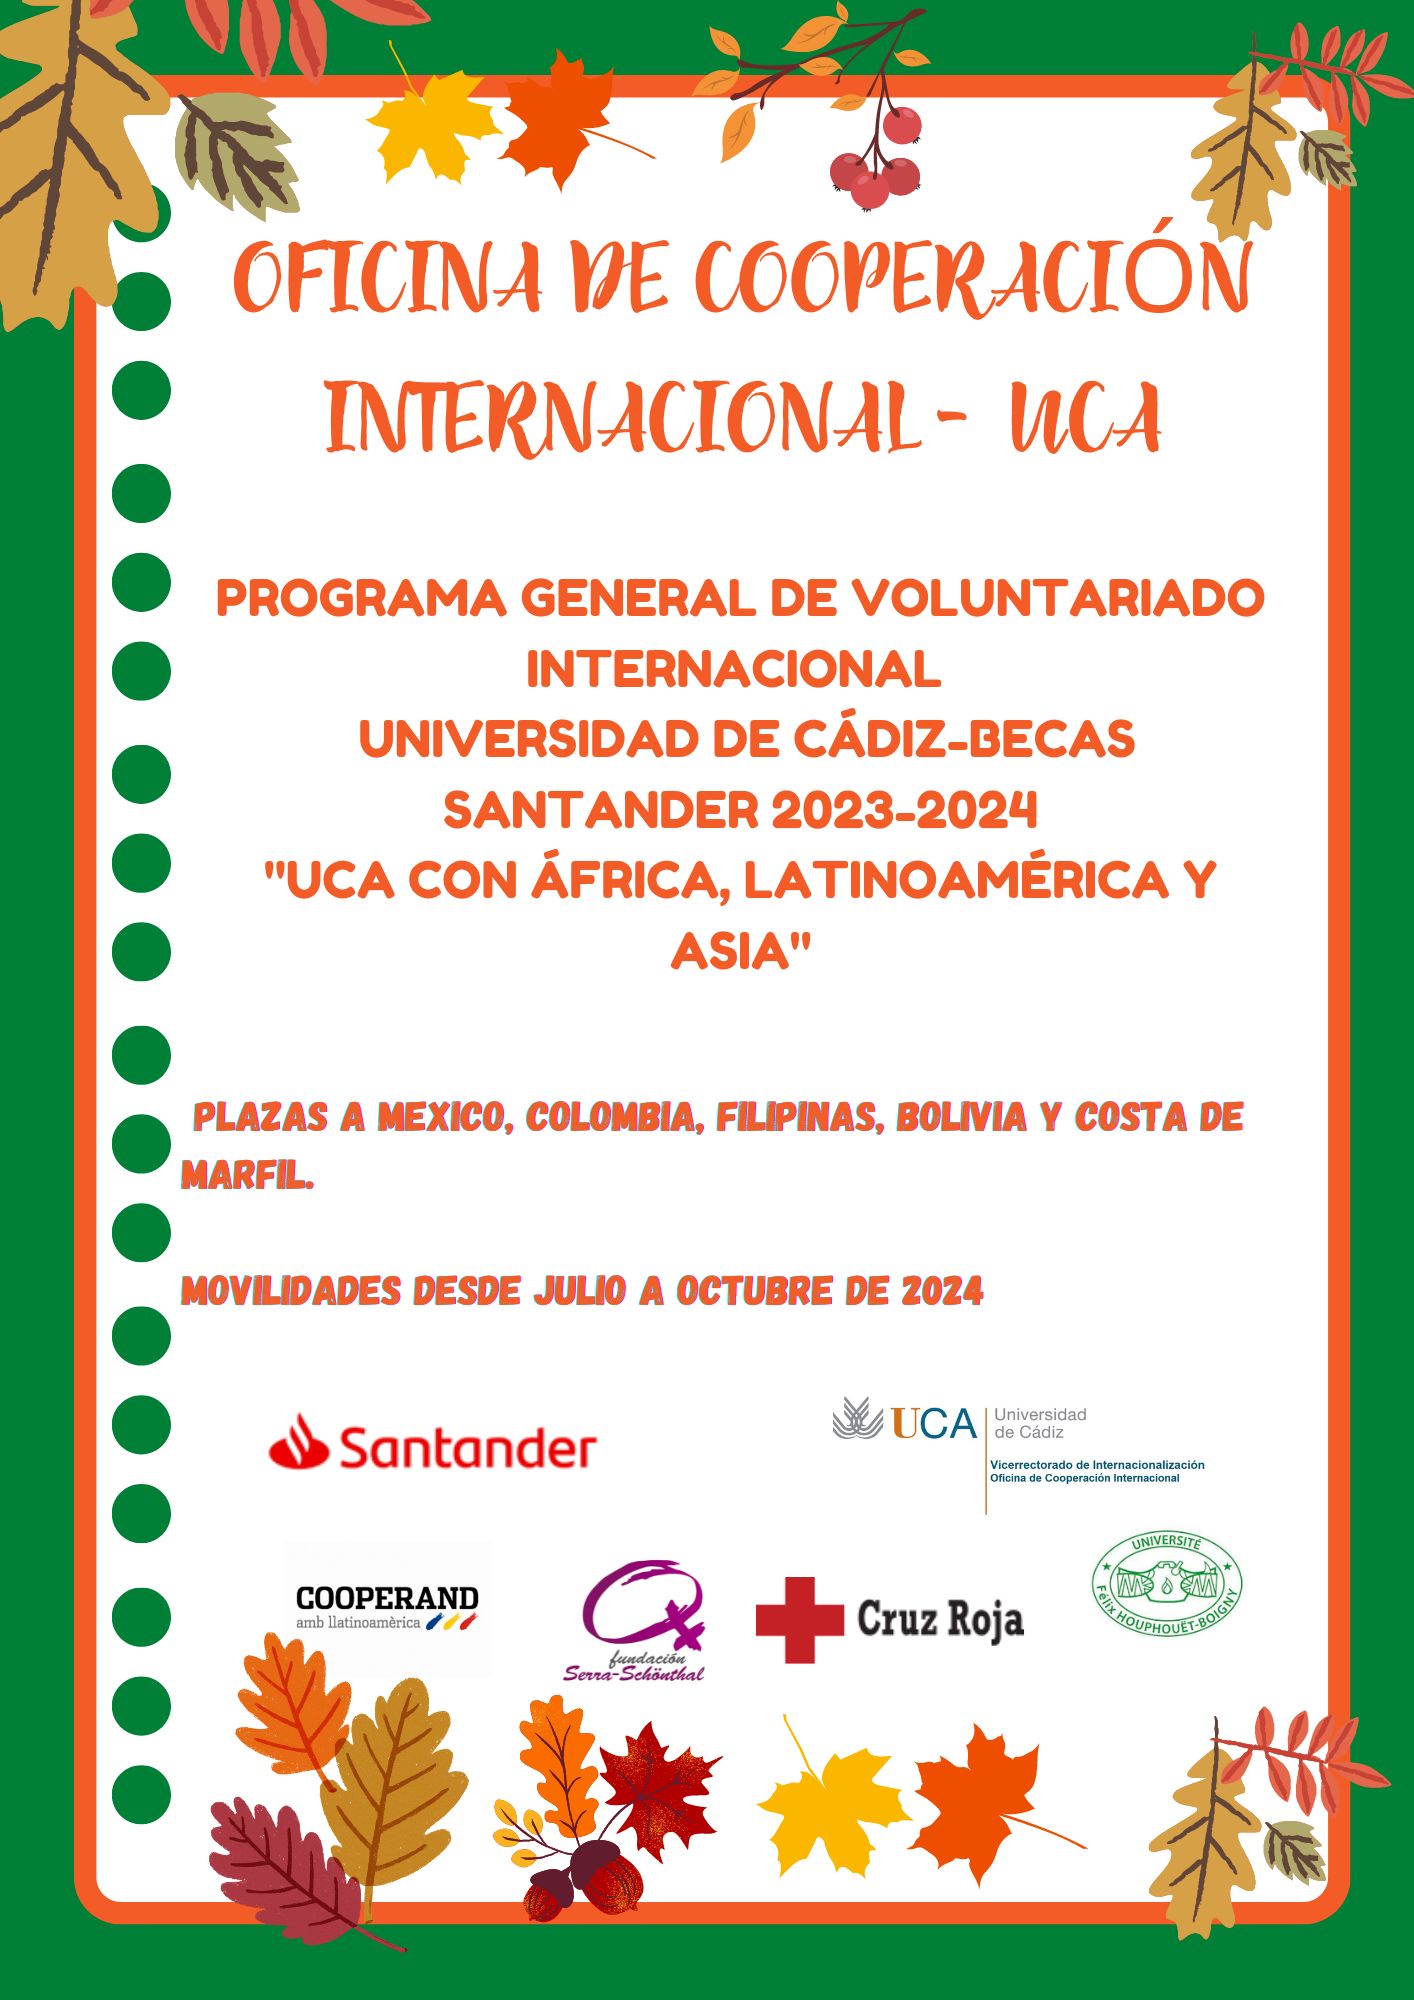 Programa General de Voluntariado Internacional Universidad de Cádiz-Becas Santander 2023-2024